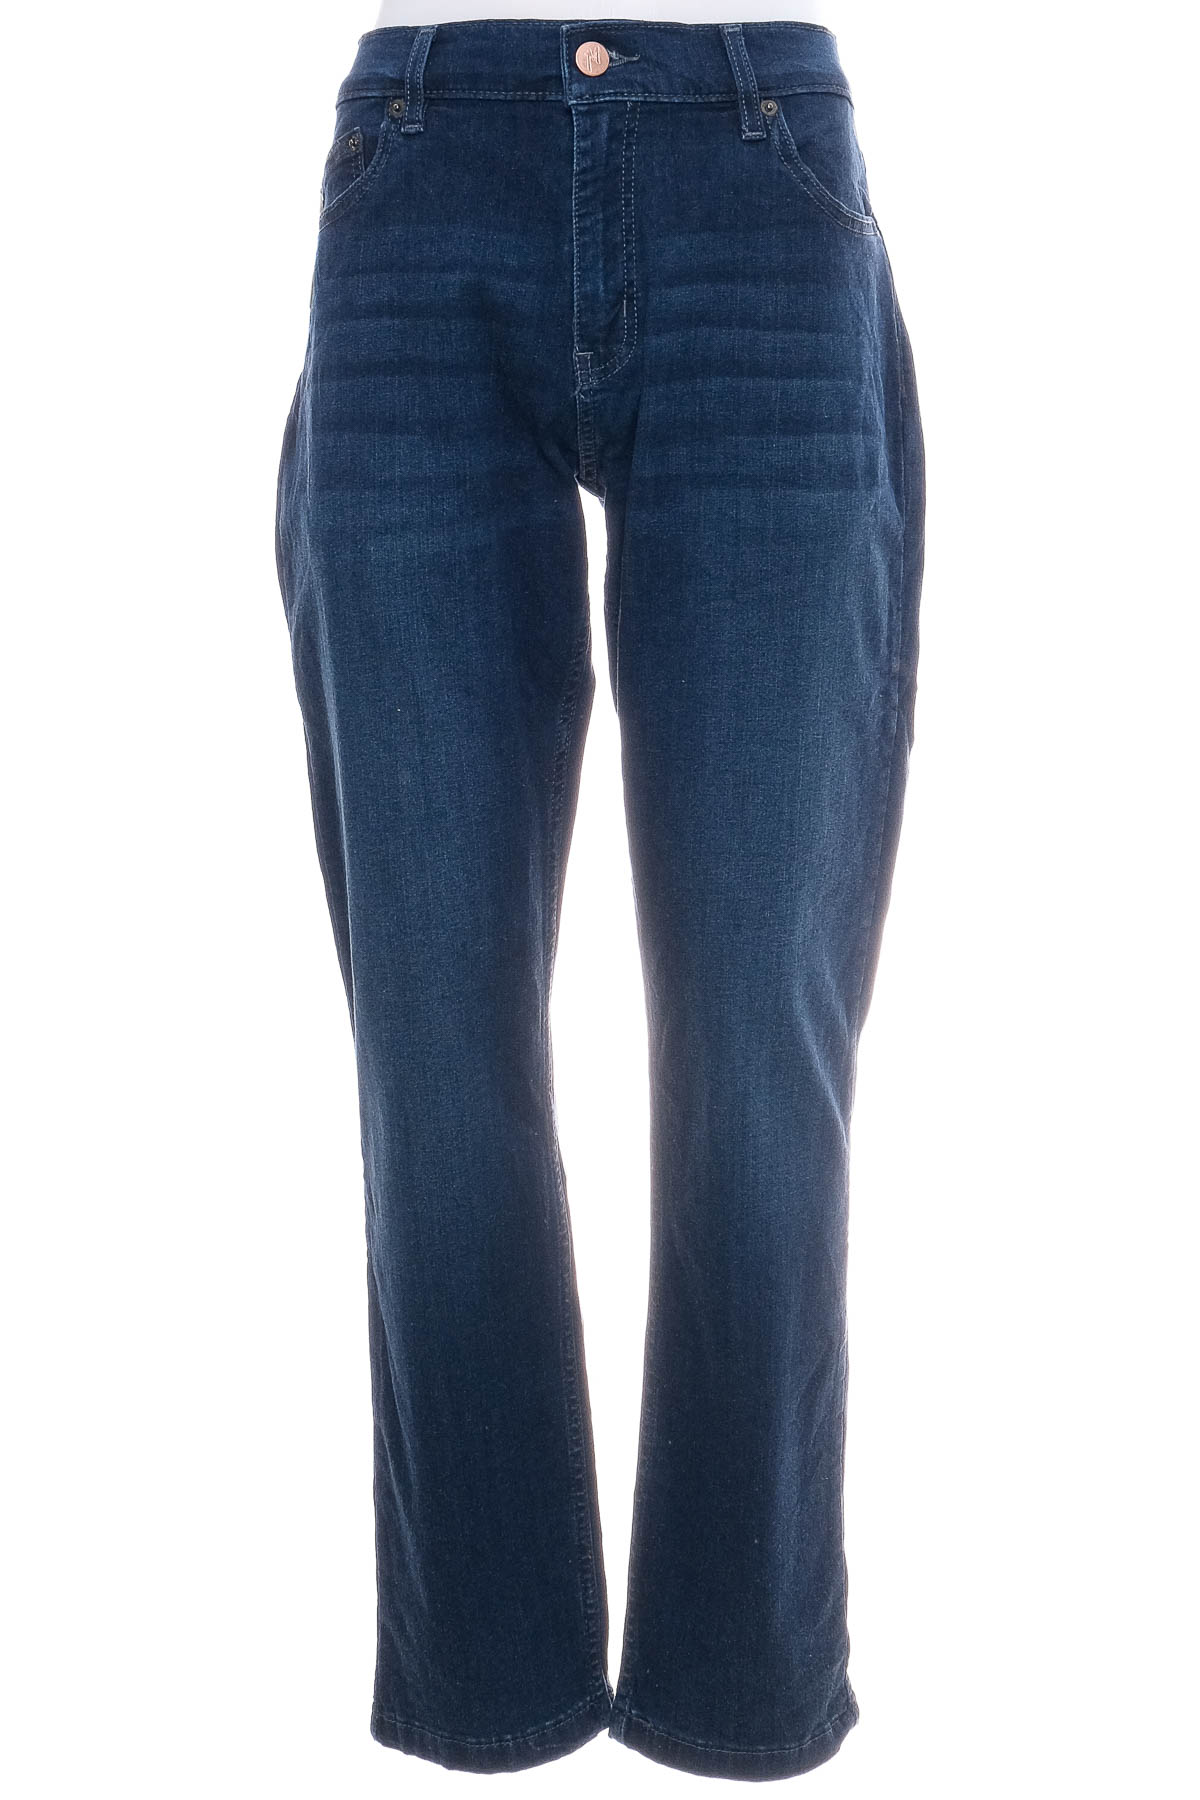 Ανδρικό τζιν - Mugsy Jeans - 0